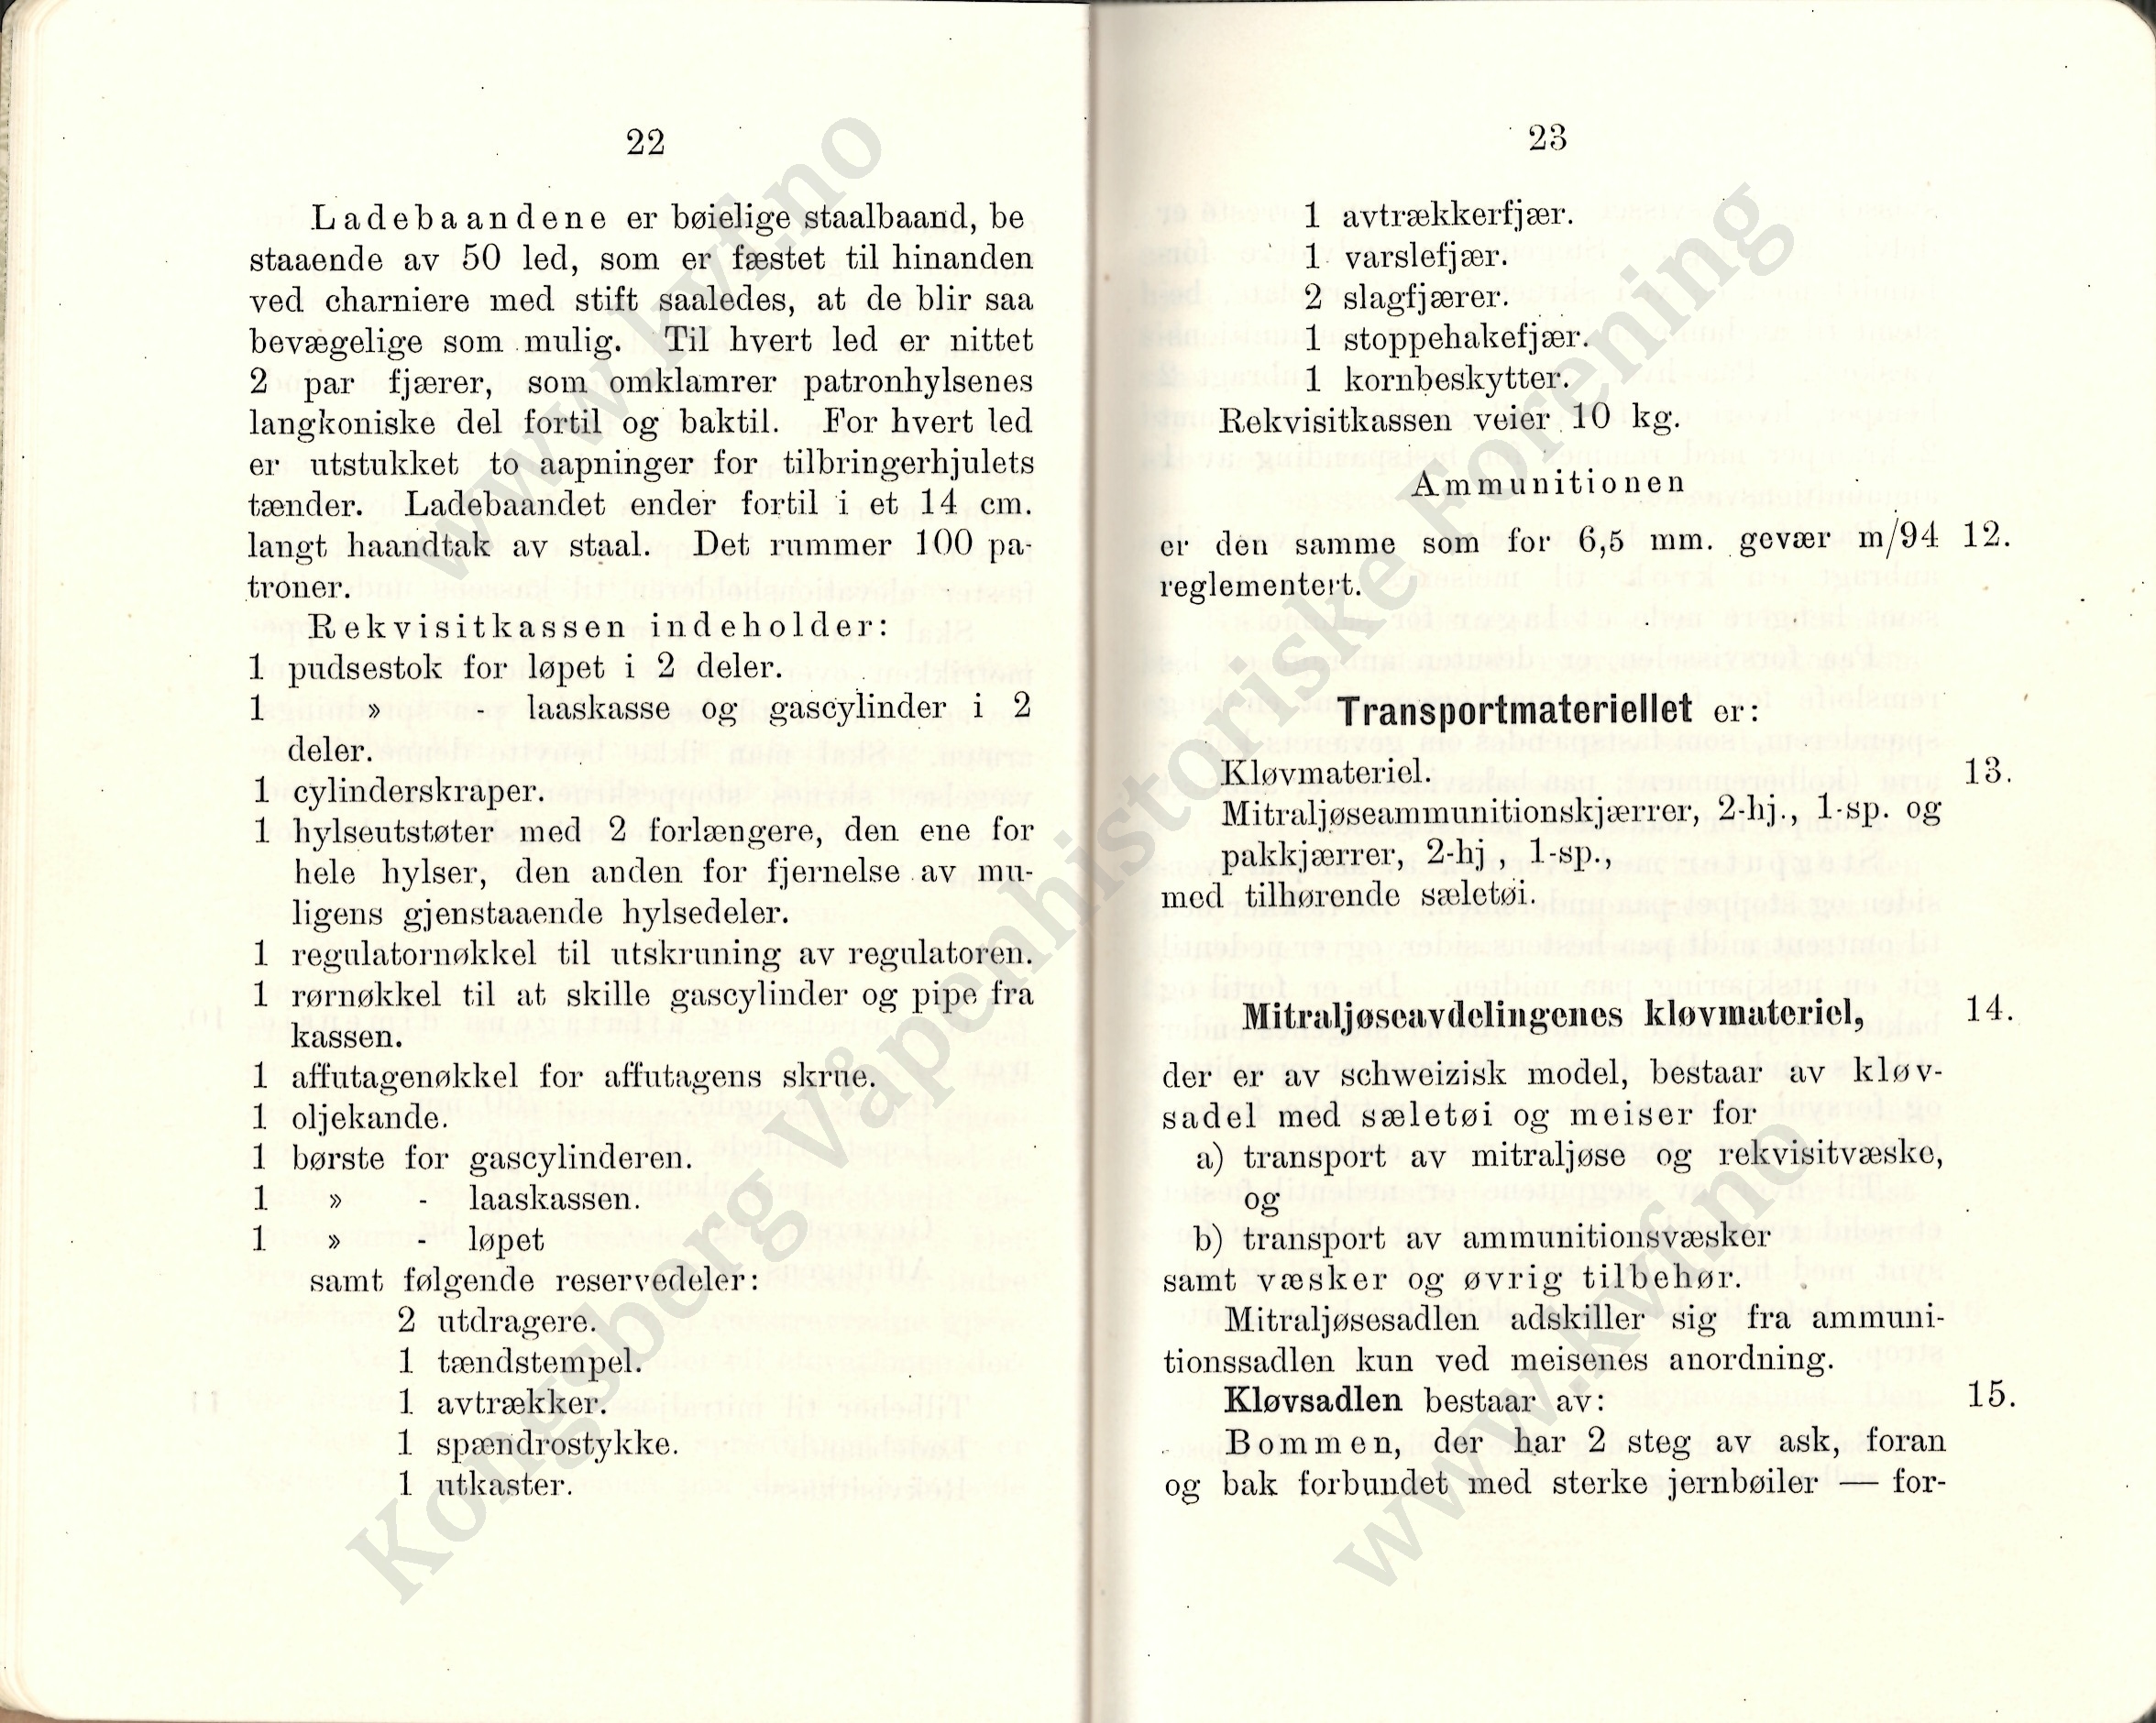 ./doc/reglement/Kav1910/Haandbok-Kav-Mitr-1910-13.jpg